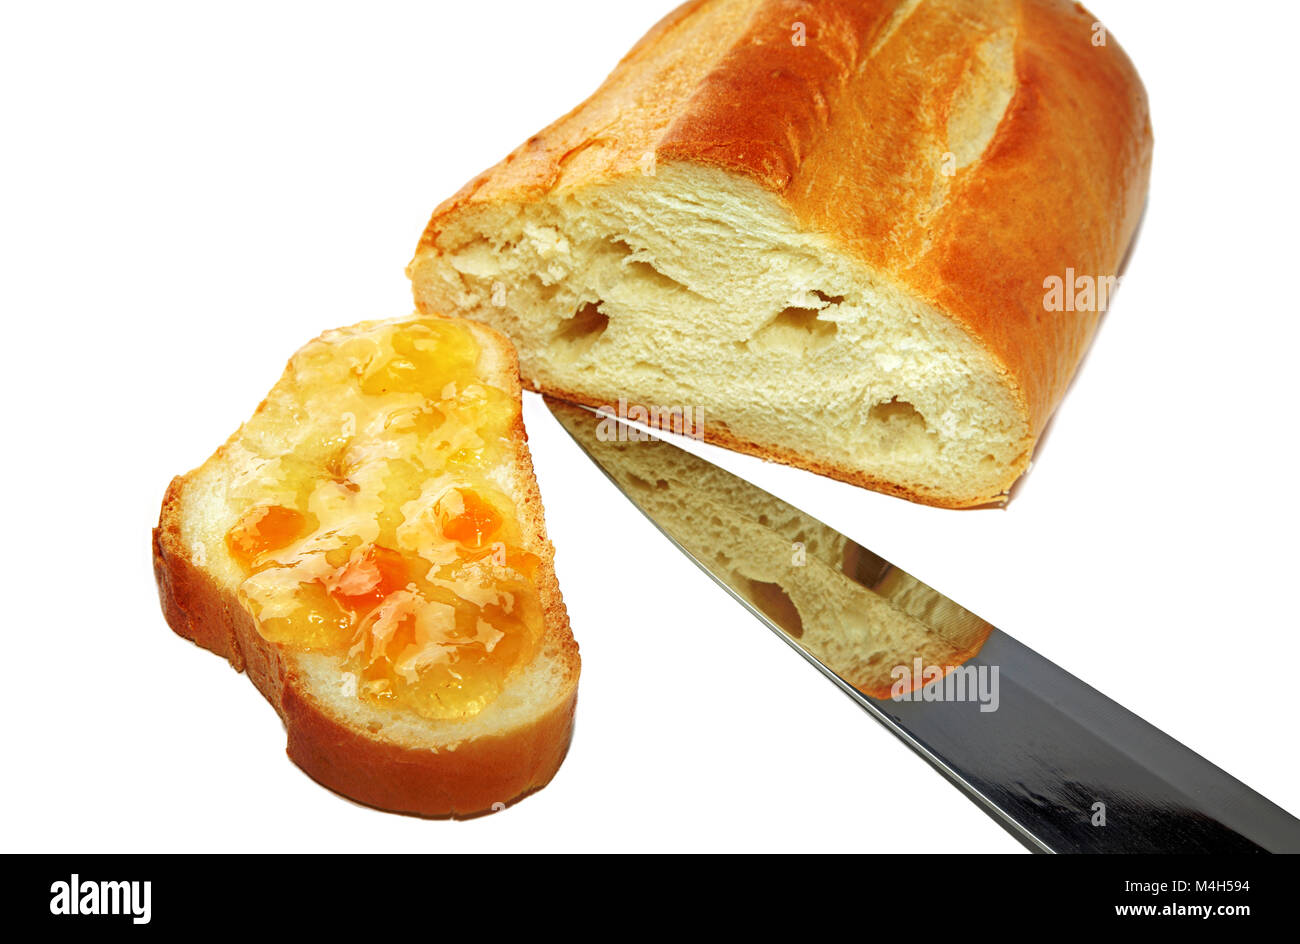 Scheibe Brot mit Marmelade und Messer Stockfoto